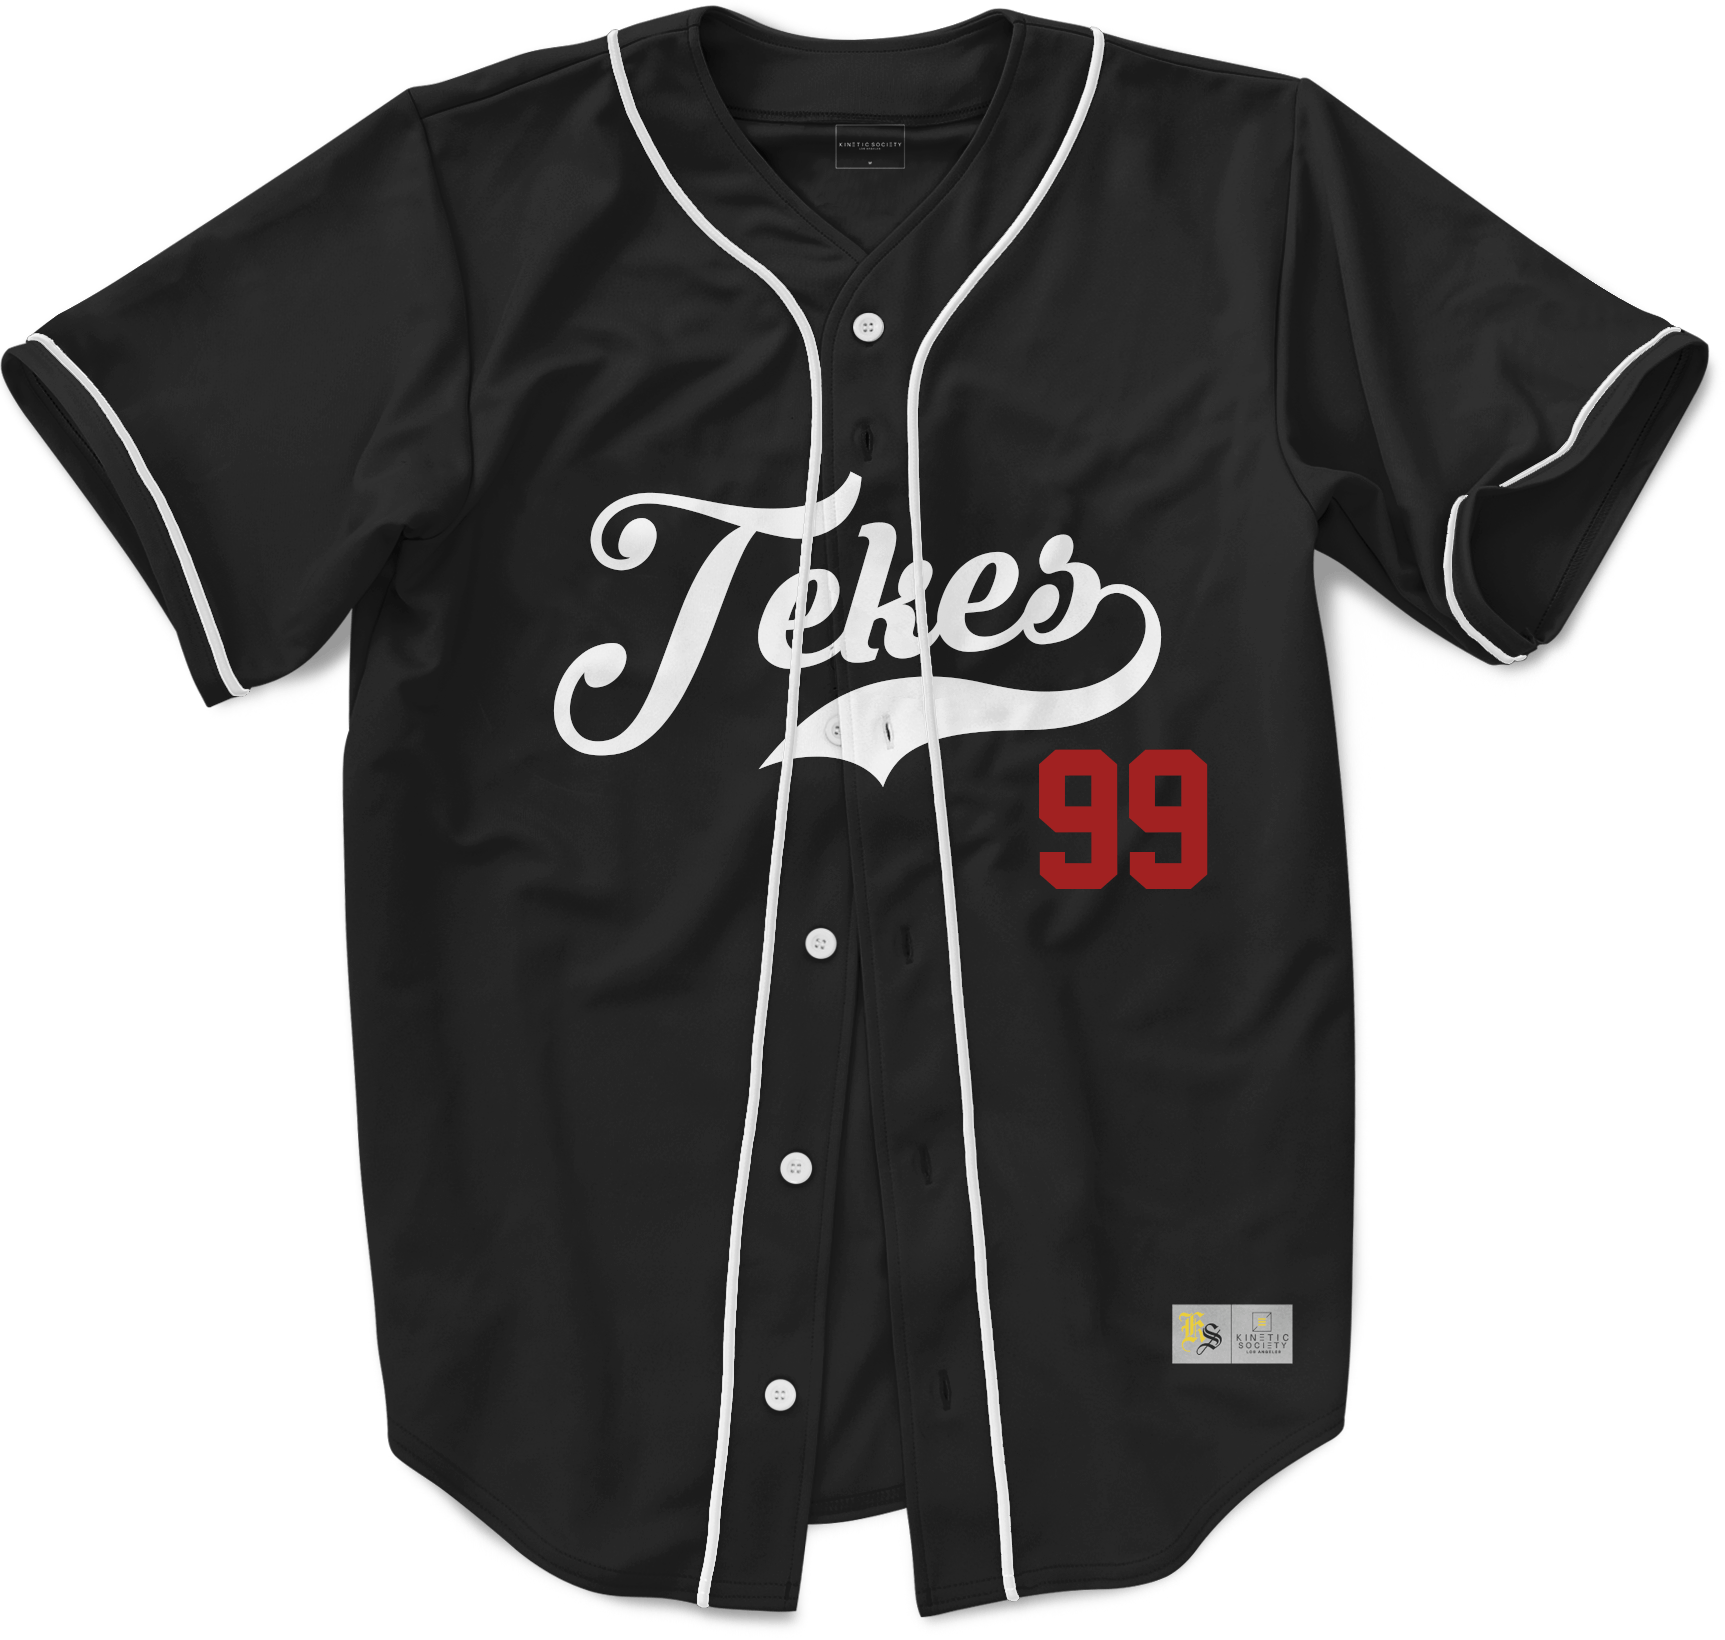 Tau Kappa Epsilon - Blackout Baseball Jersey